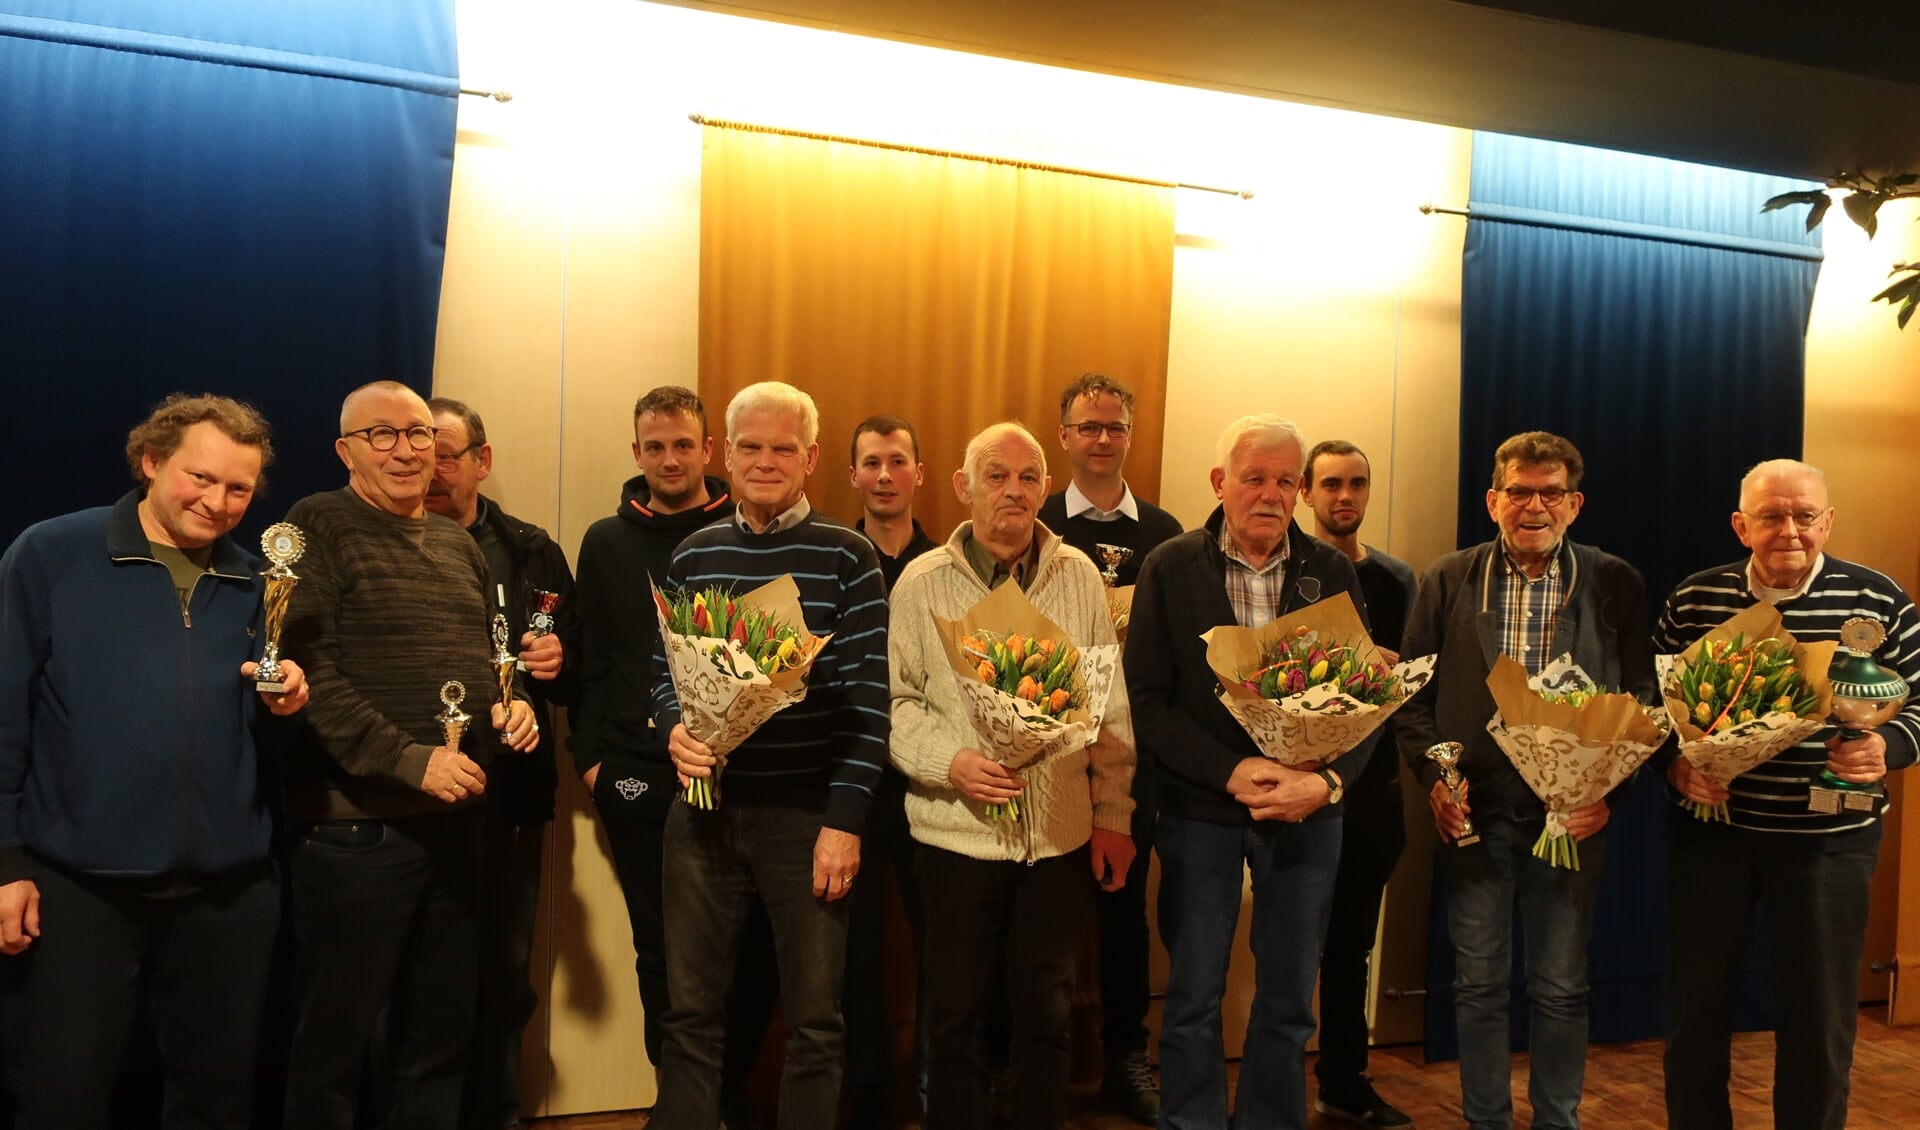 • De kampioenen en jubilarissen, met op de voorste rij, 3e van links J. Muilwijk 50 jaar lid, 4e B.P. v/d Linden, 5e van links B. van Hof beiden 40 jaar lid en verder alle kampioenen.